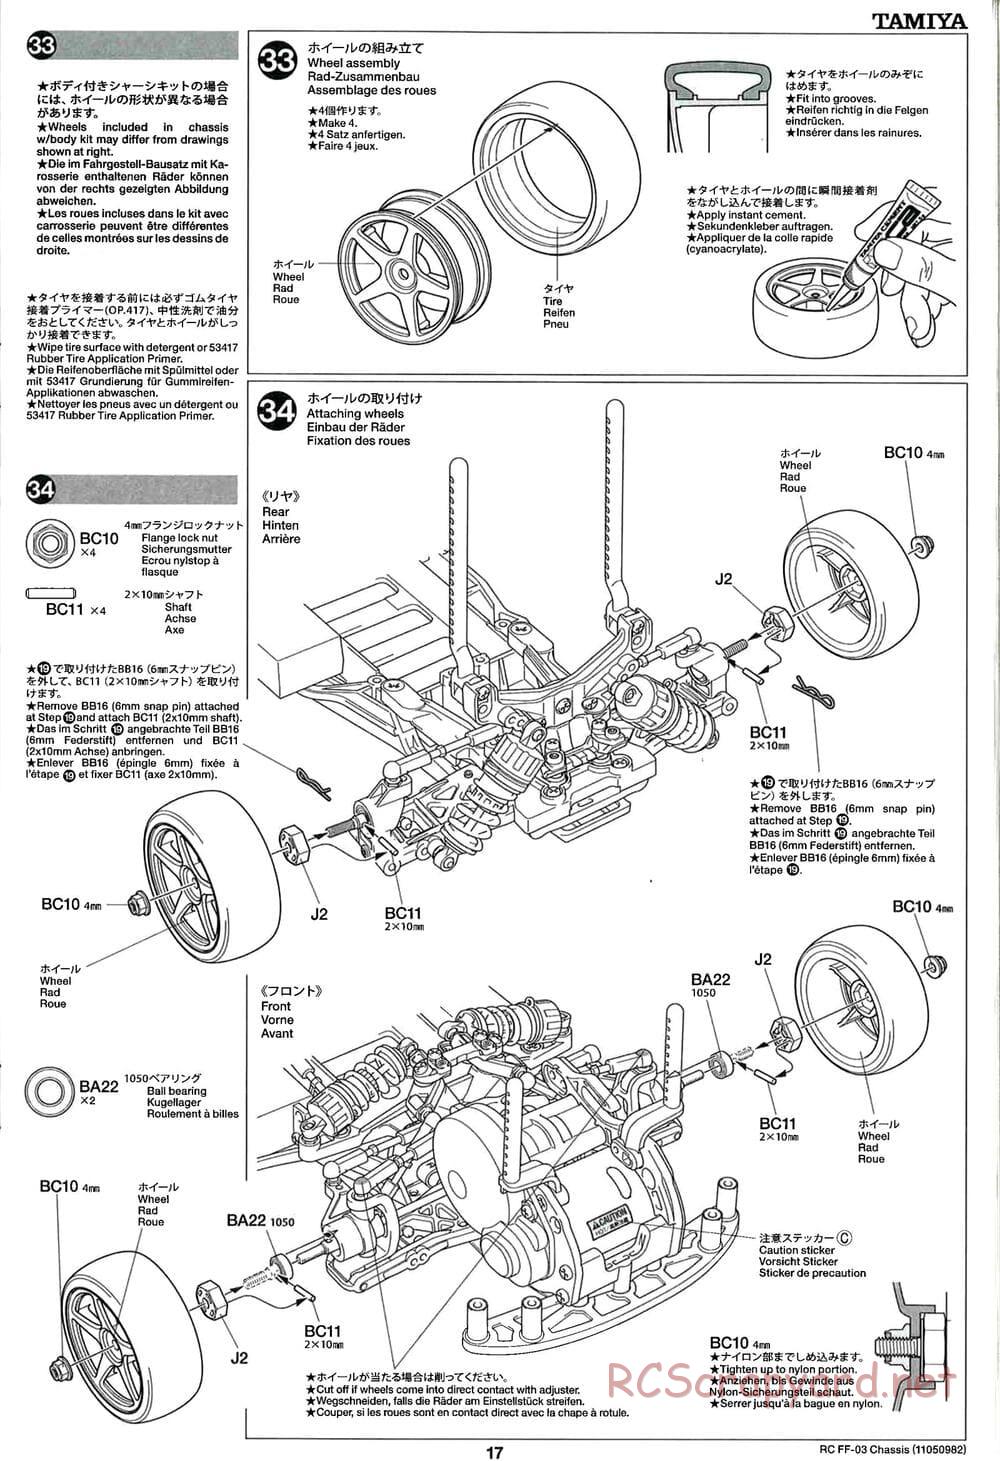 Tamiya - Castrol Honda Civic VTi - FF-03 Chassis - Manual - Page 17